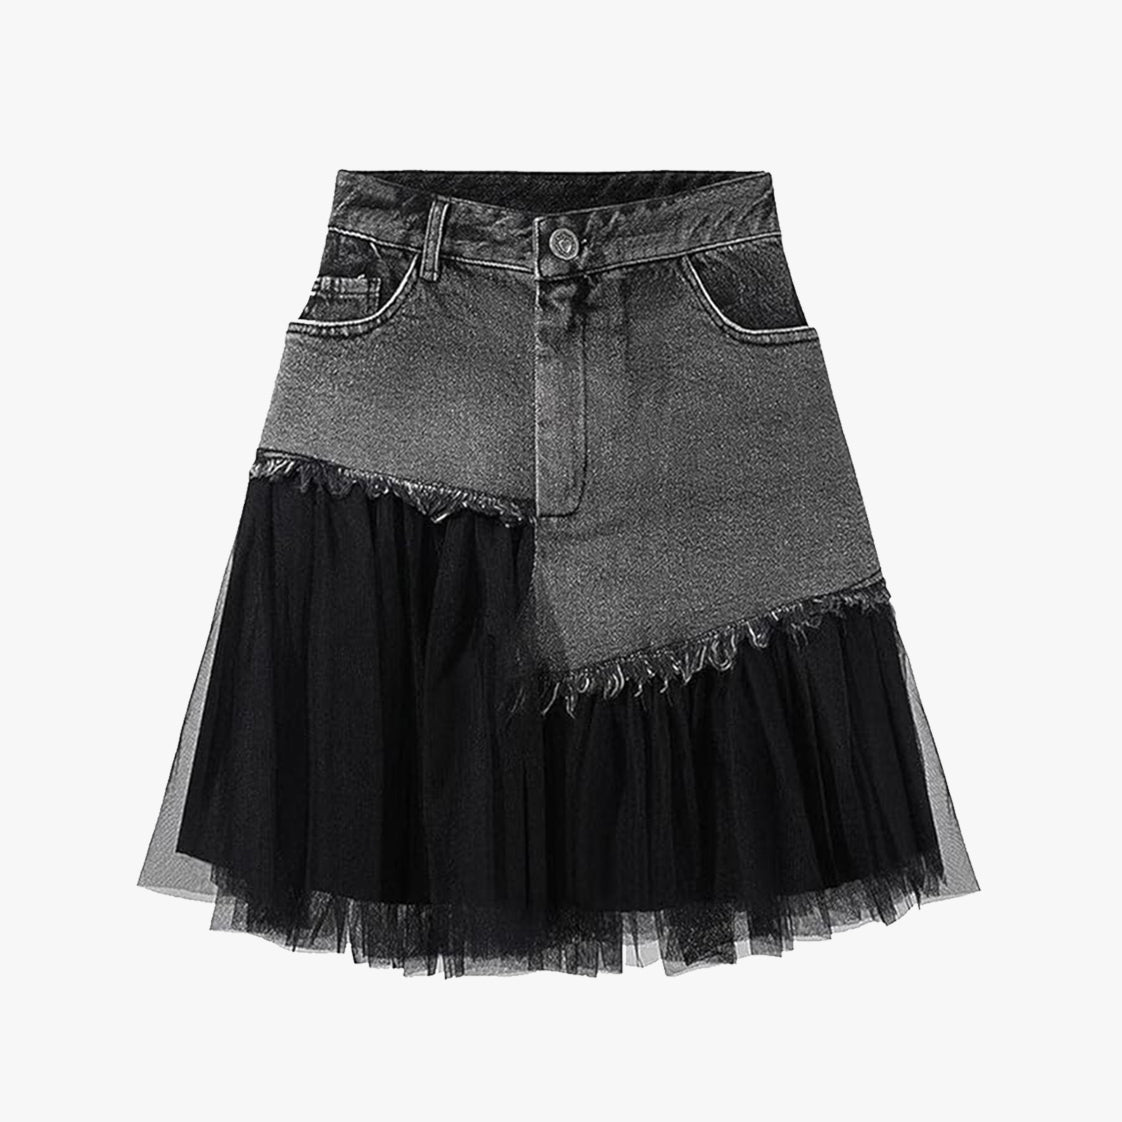 Raven's Feather Mini Skirt